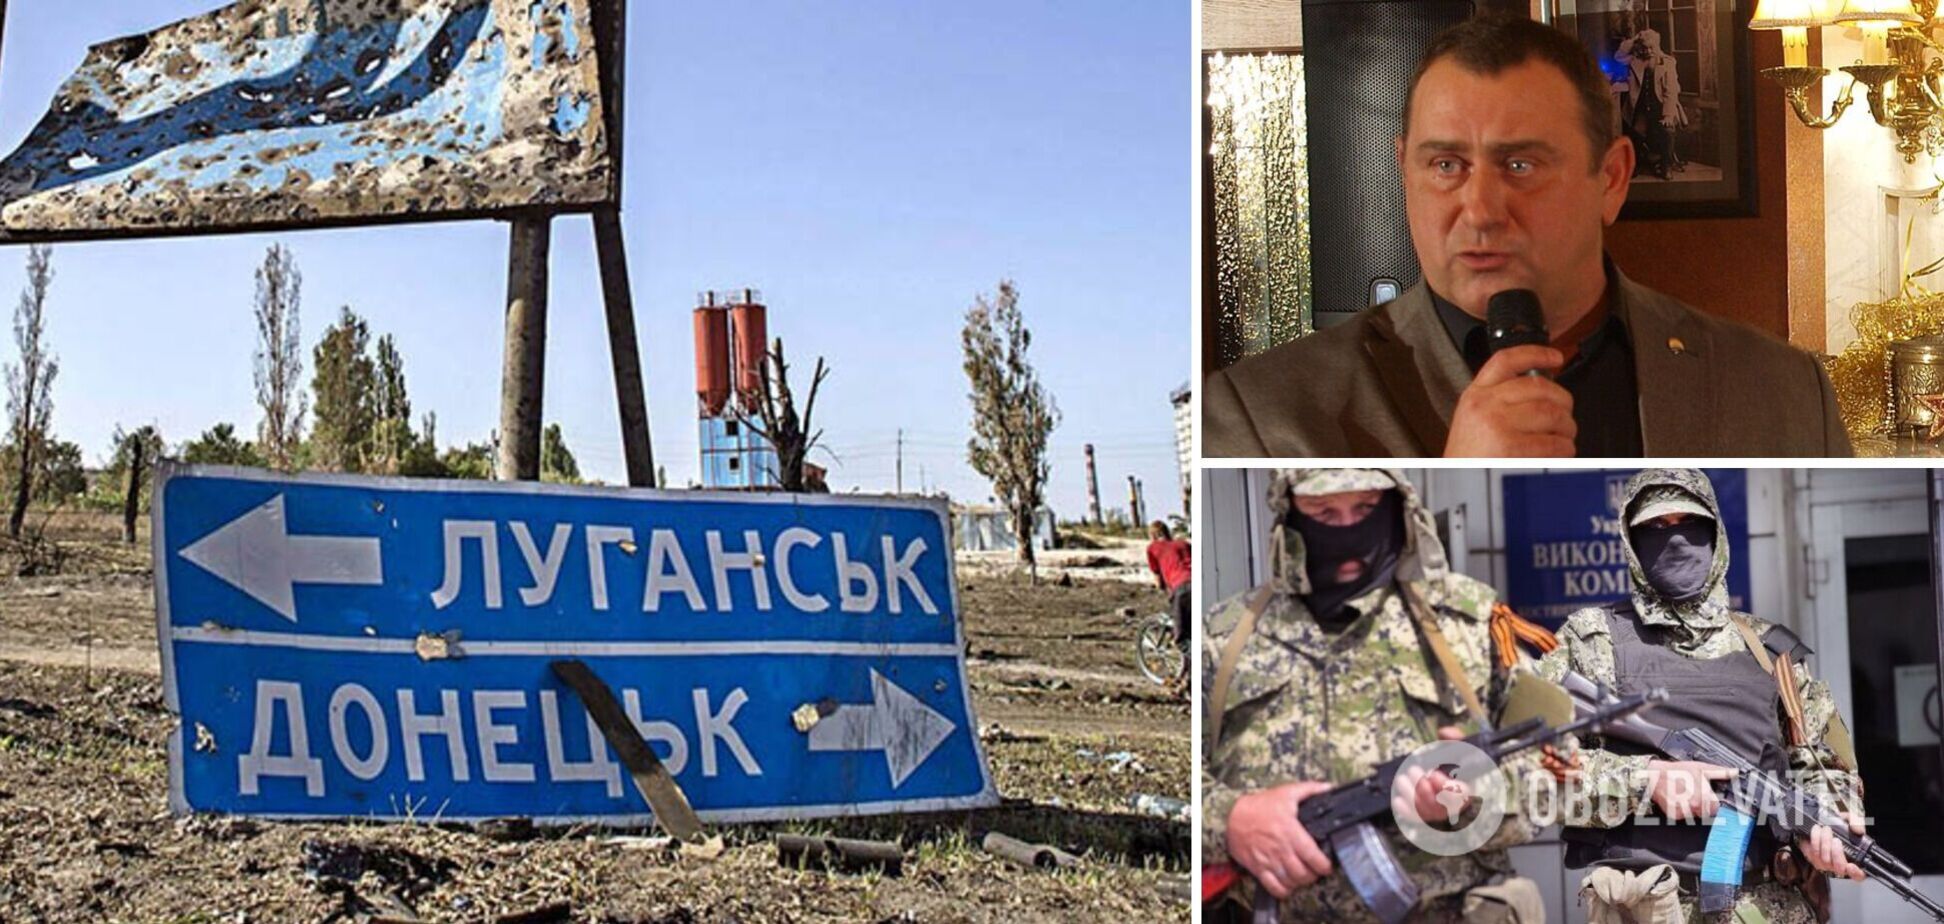 'Вывозили все, что могли': соратник Гиркина неожиданно признал преступления РФ на Донбассе. Видео